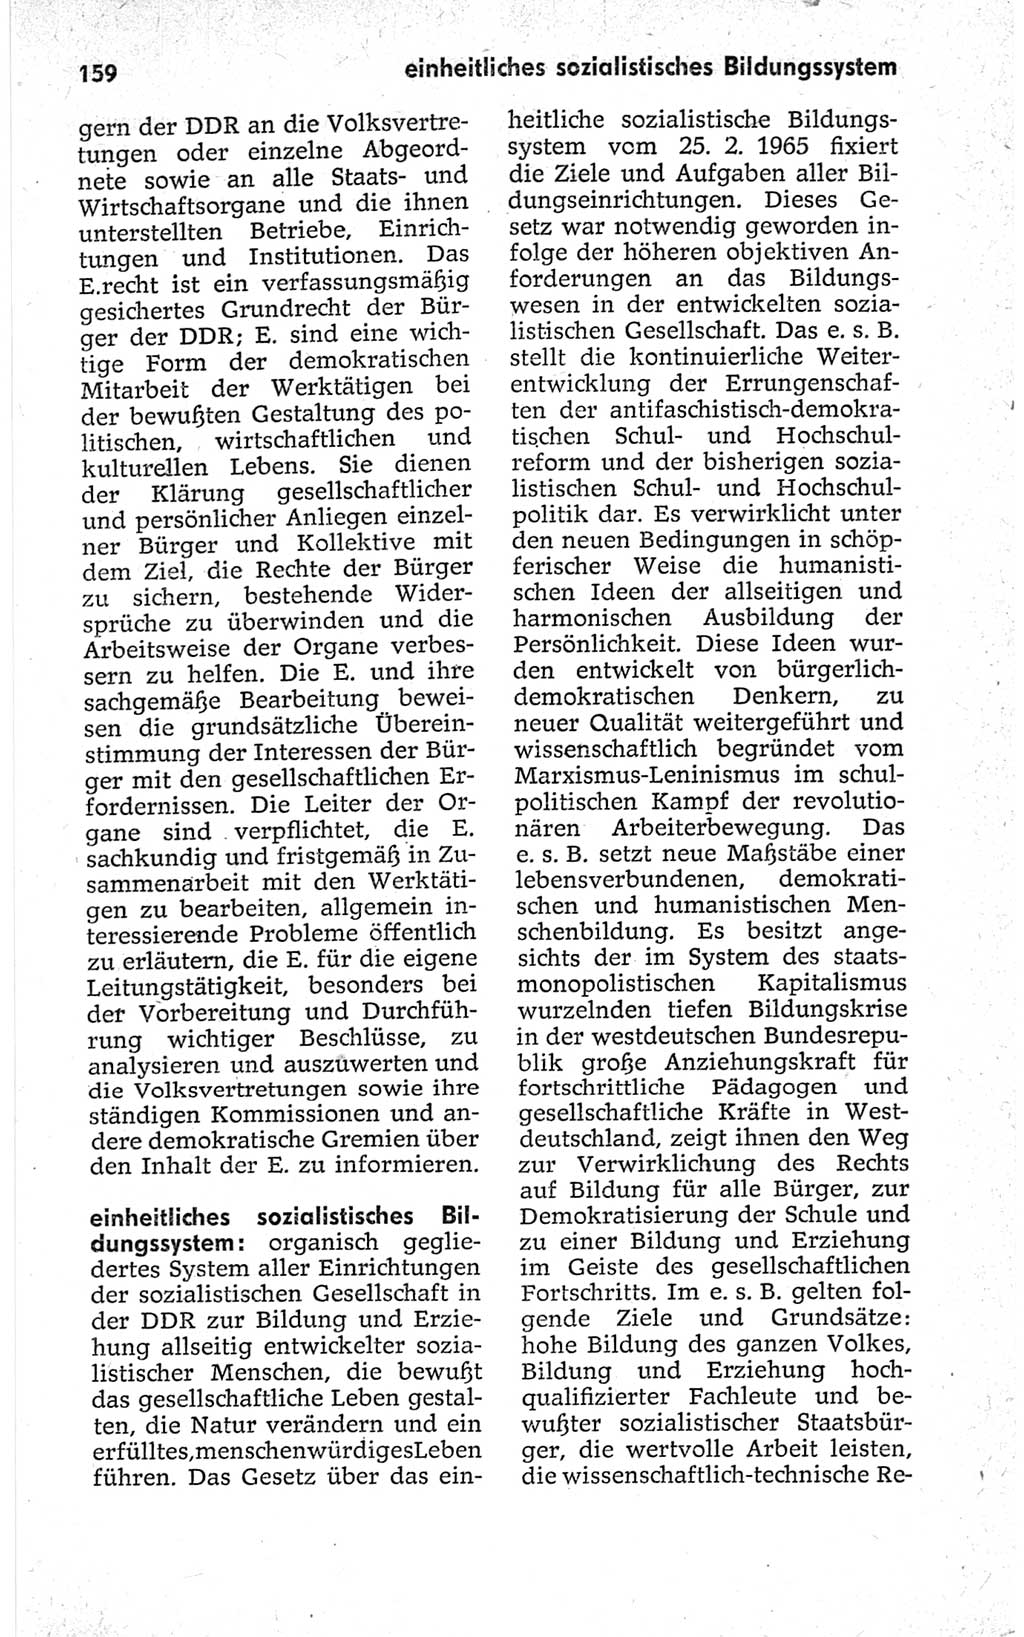 Kleines politisches Wörterbuch [Deutsche Demokratische Republik (DDR)] 1967, Seite 159 (Kl. pol. Wb. DDR 1967, S. 159)